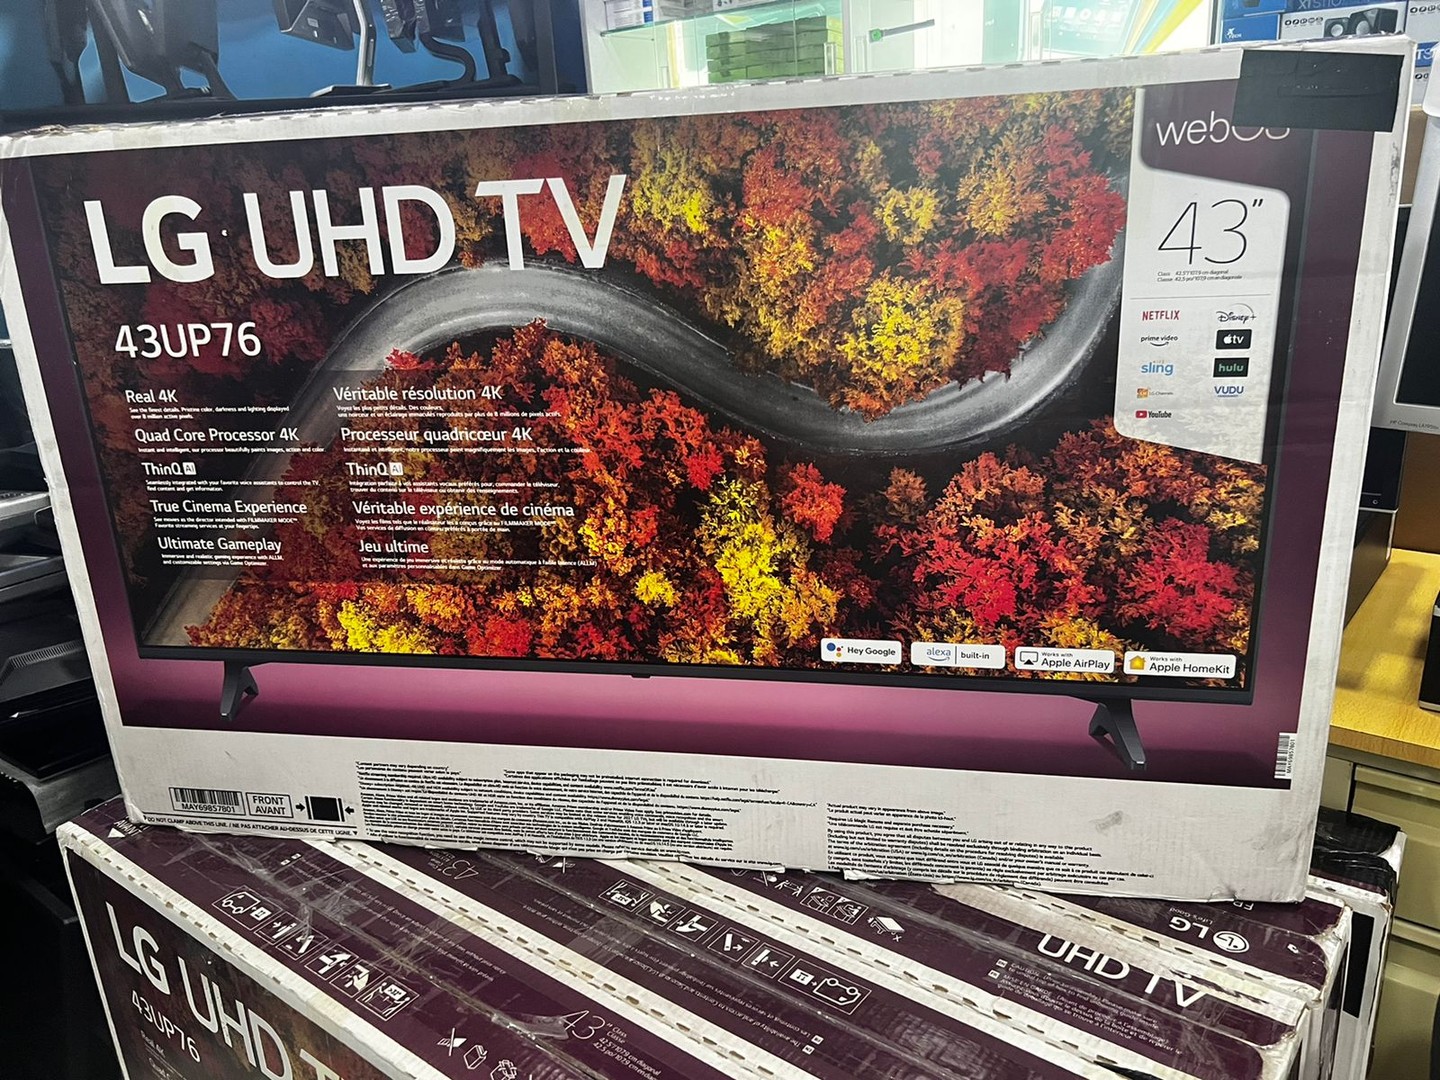 tv - Televisor Smart Tv LG de 43 pulgadas UHD 4K Serie 43UP76 1